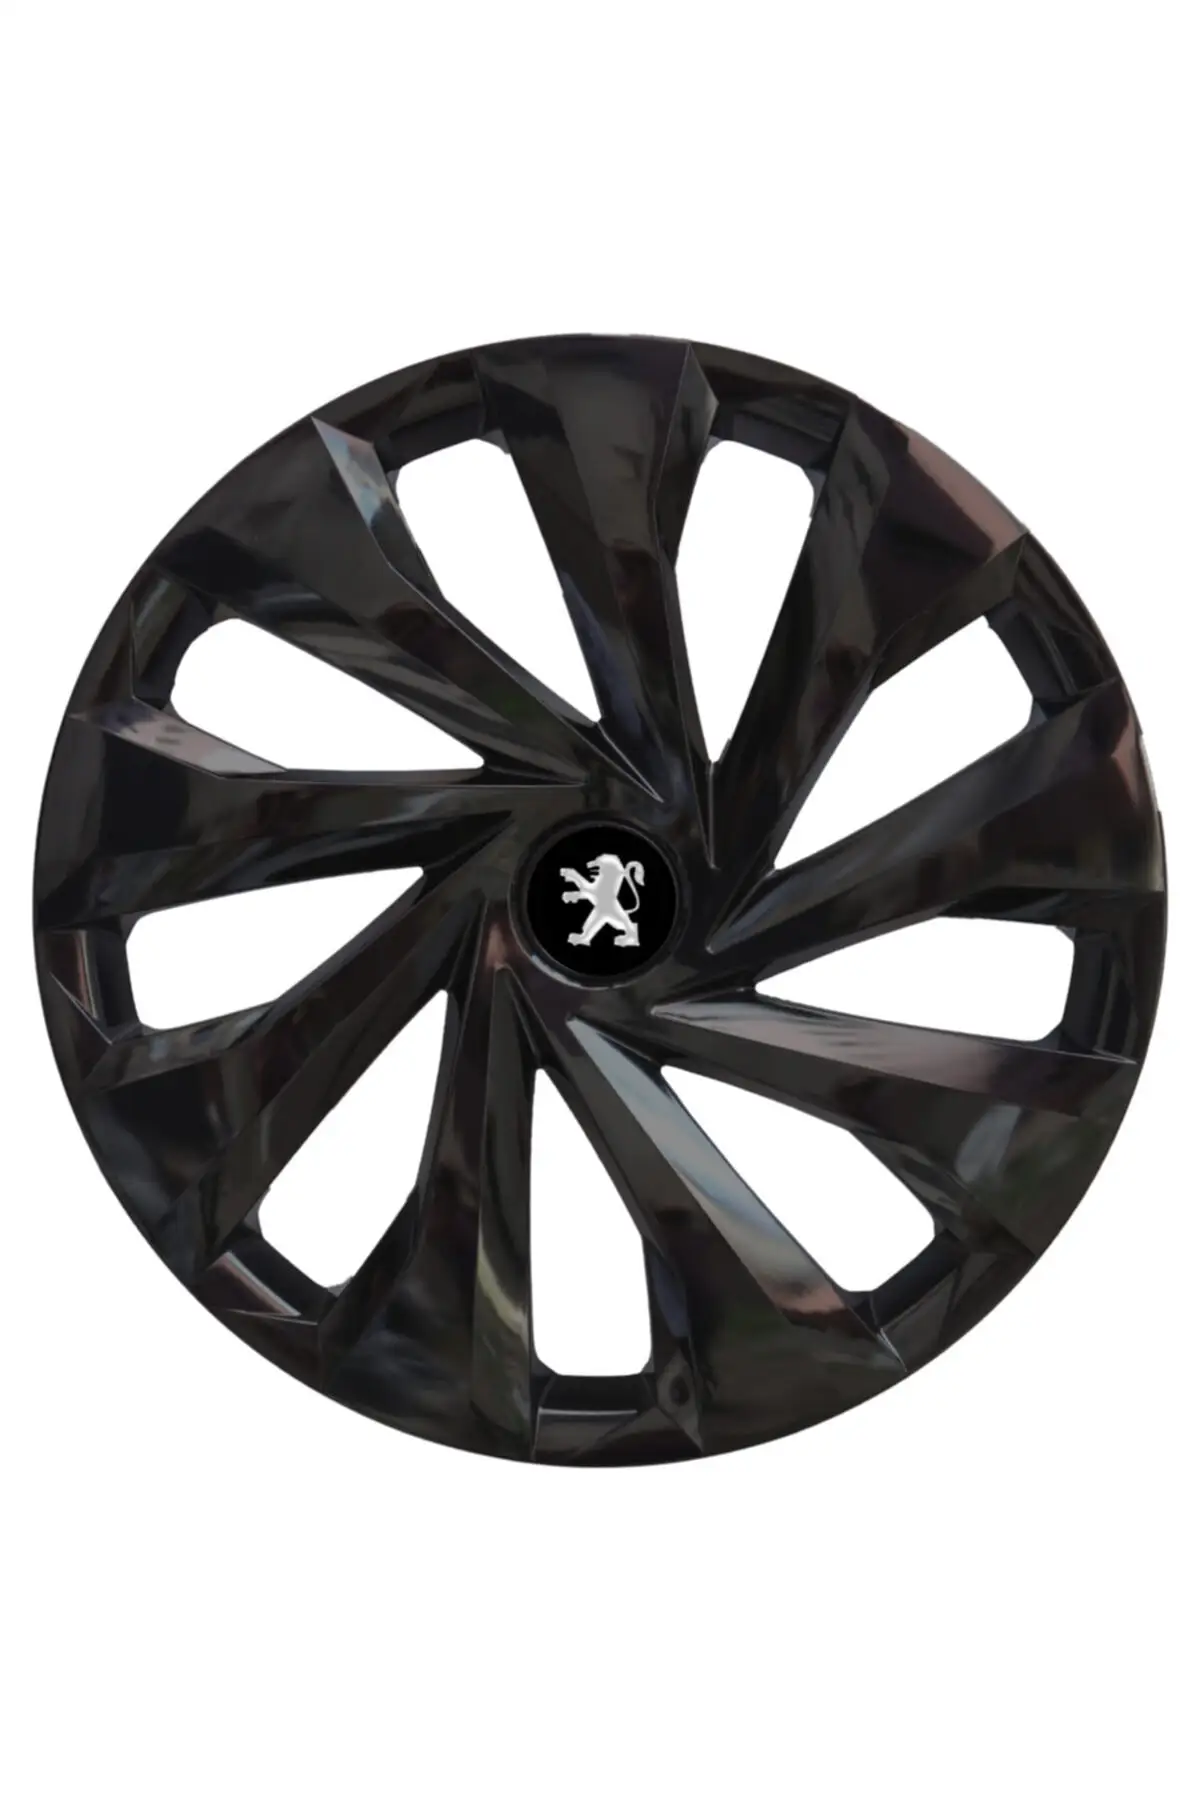 Peugeot 206 14 ''inches Compatible Wheel Cover Set 1 1013 4 pcs KDR3040